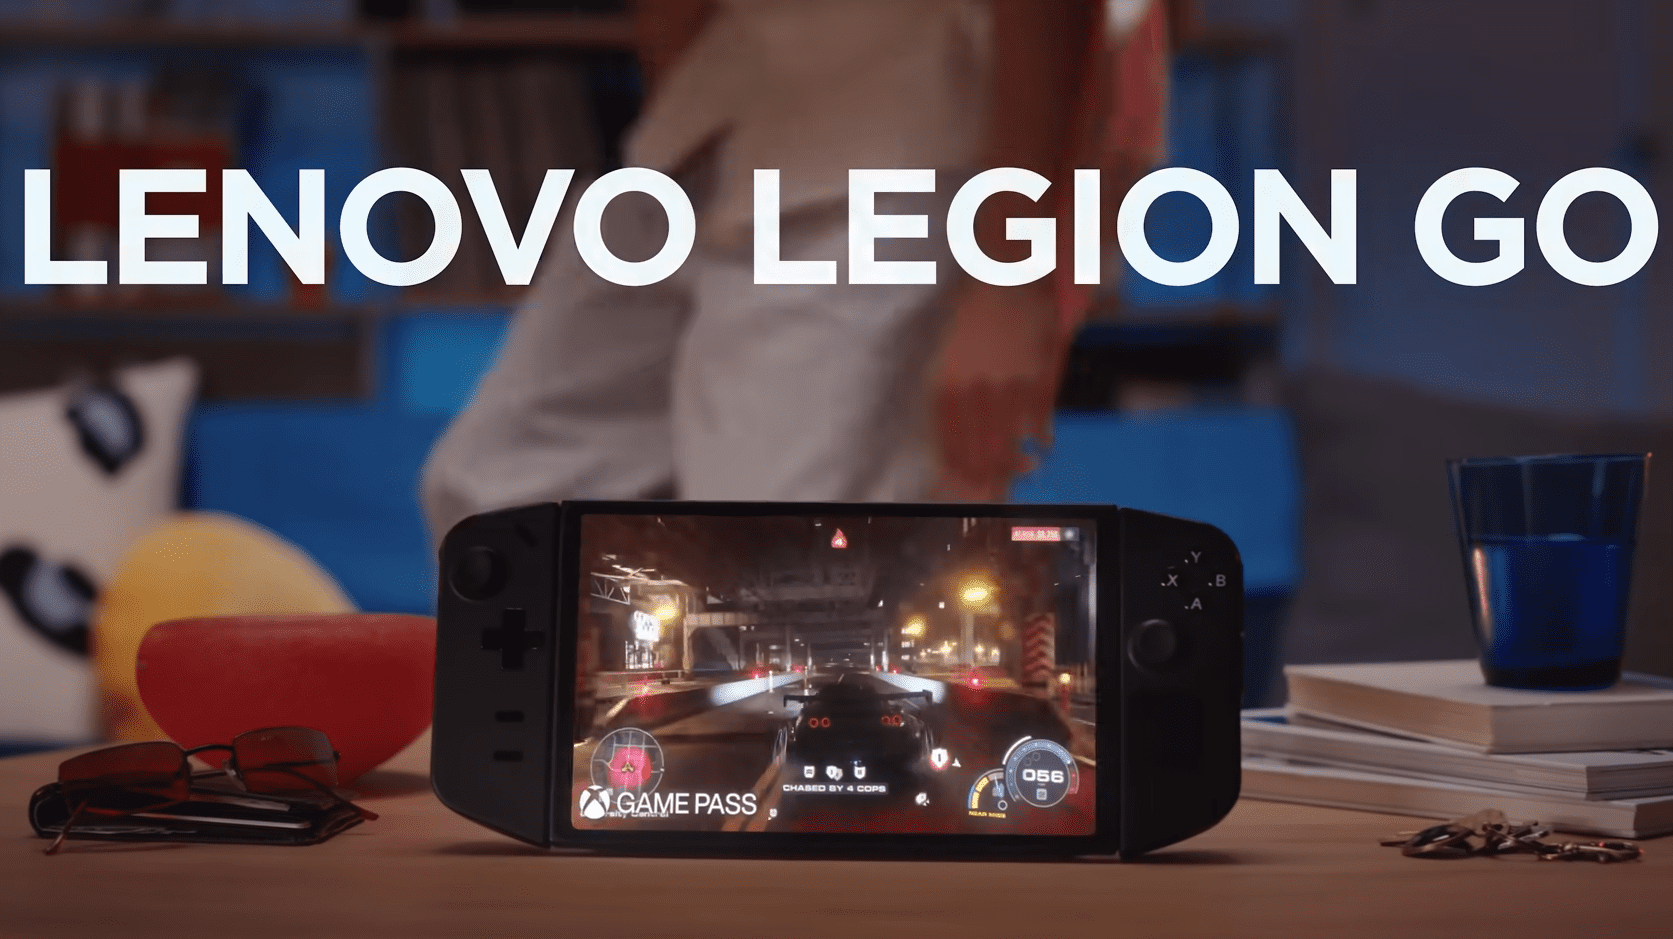 Hoje, na China, começam as vendas do console Lenovo Legion Go